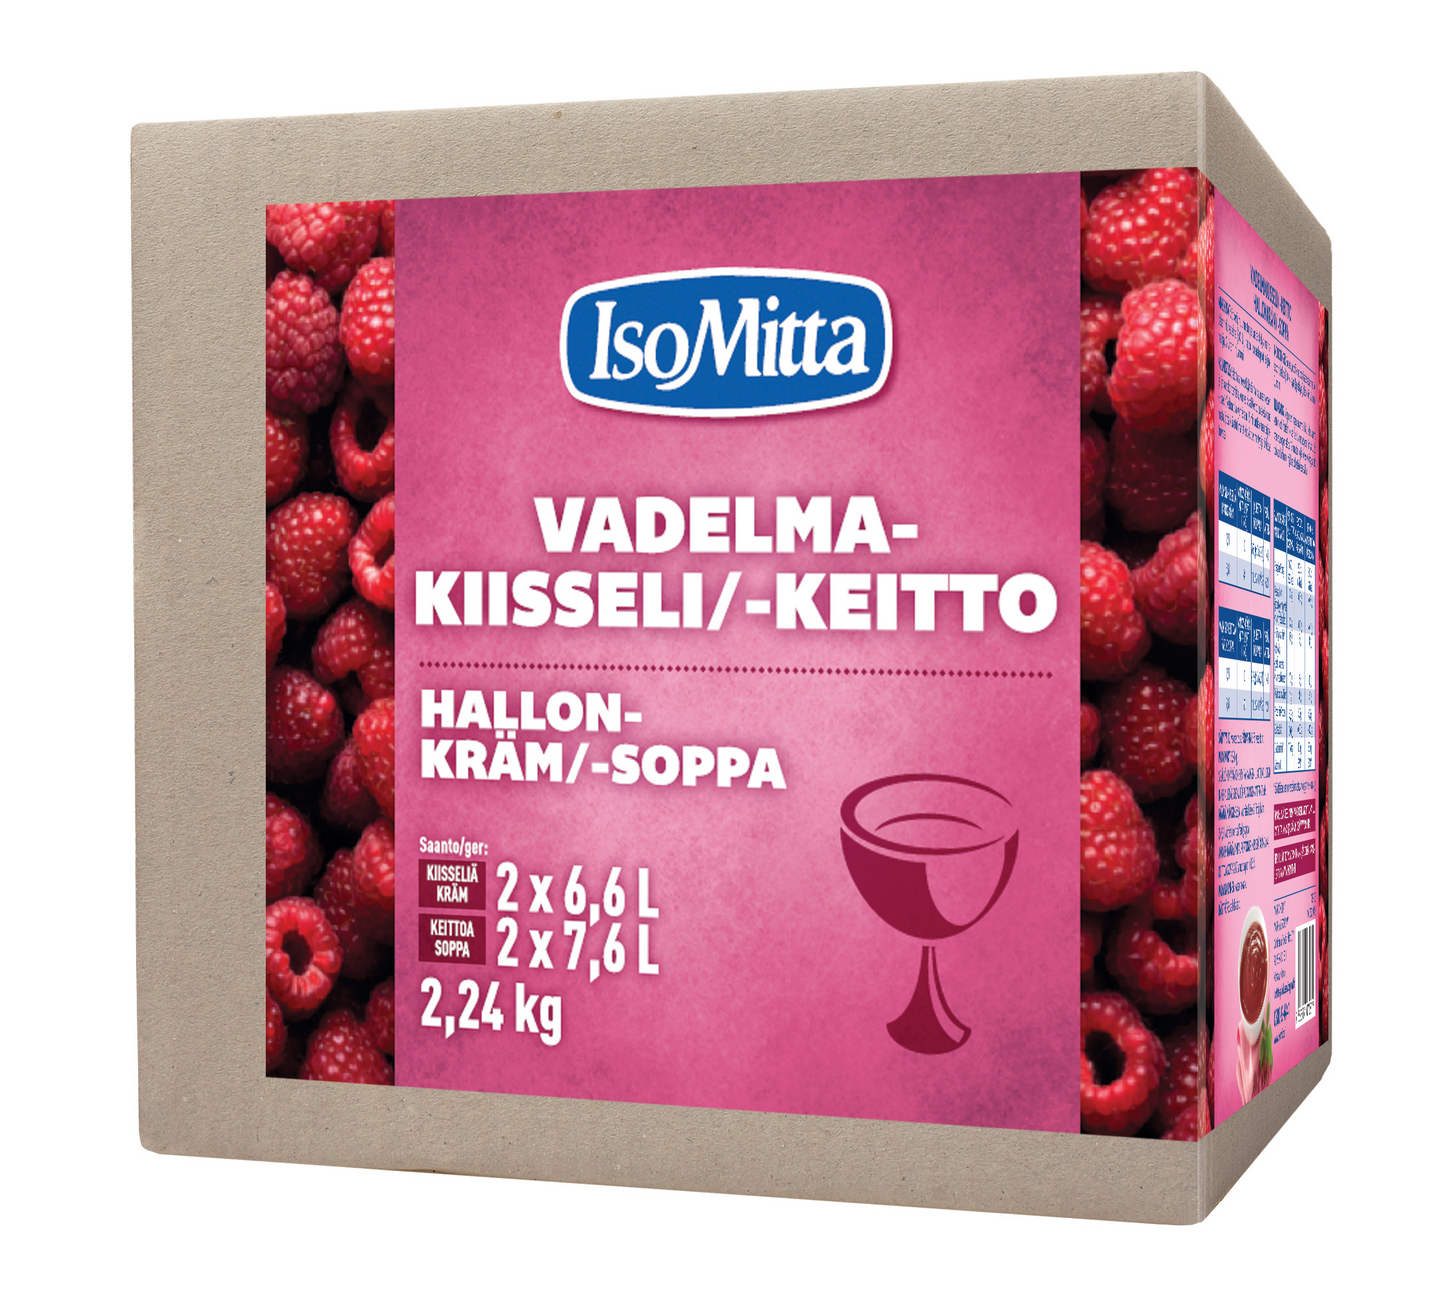 IsoMitta Vadelmakiisseli/-keitto 2x1120g